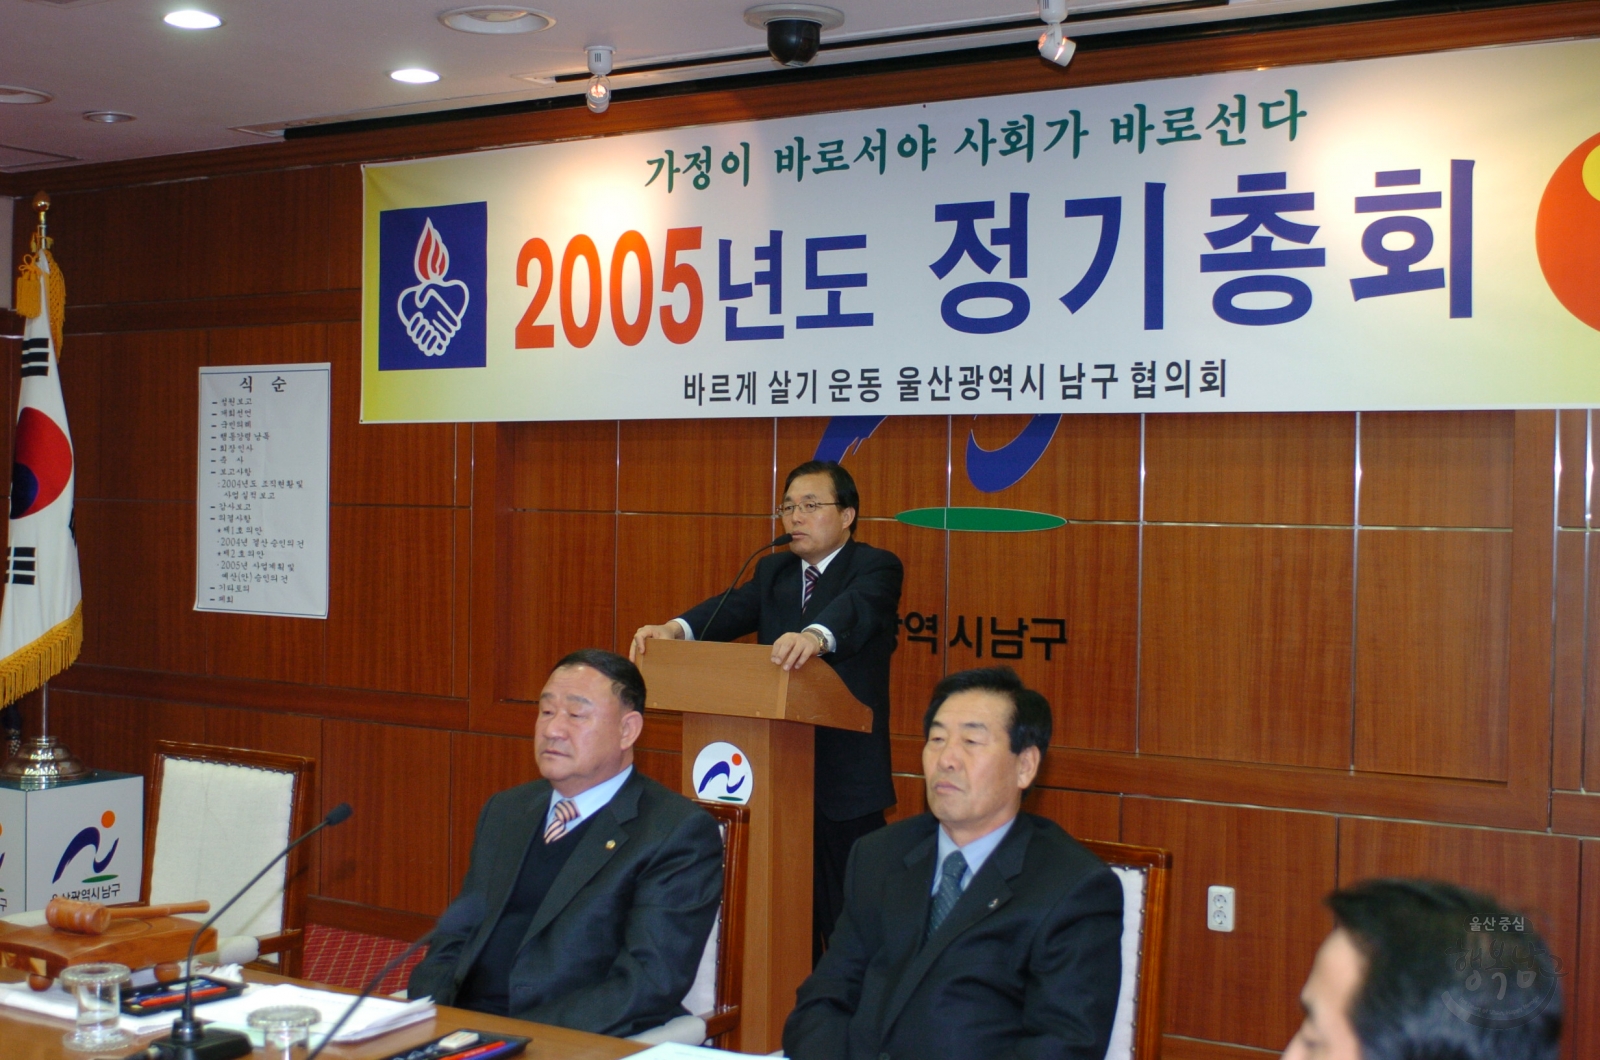 2005년도 정기총회(바르게살기운동 울산광역시 남구협의회) 의 사진